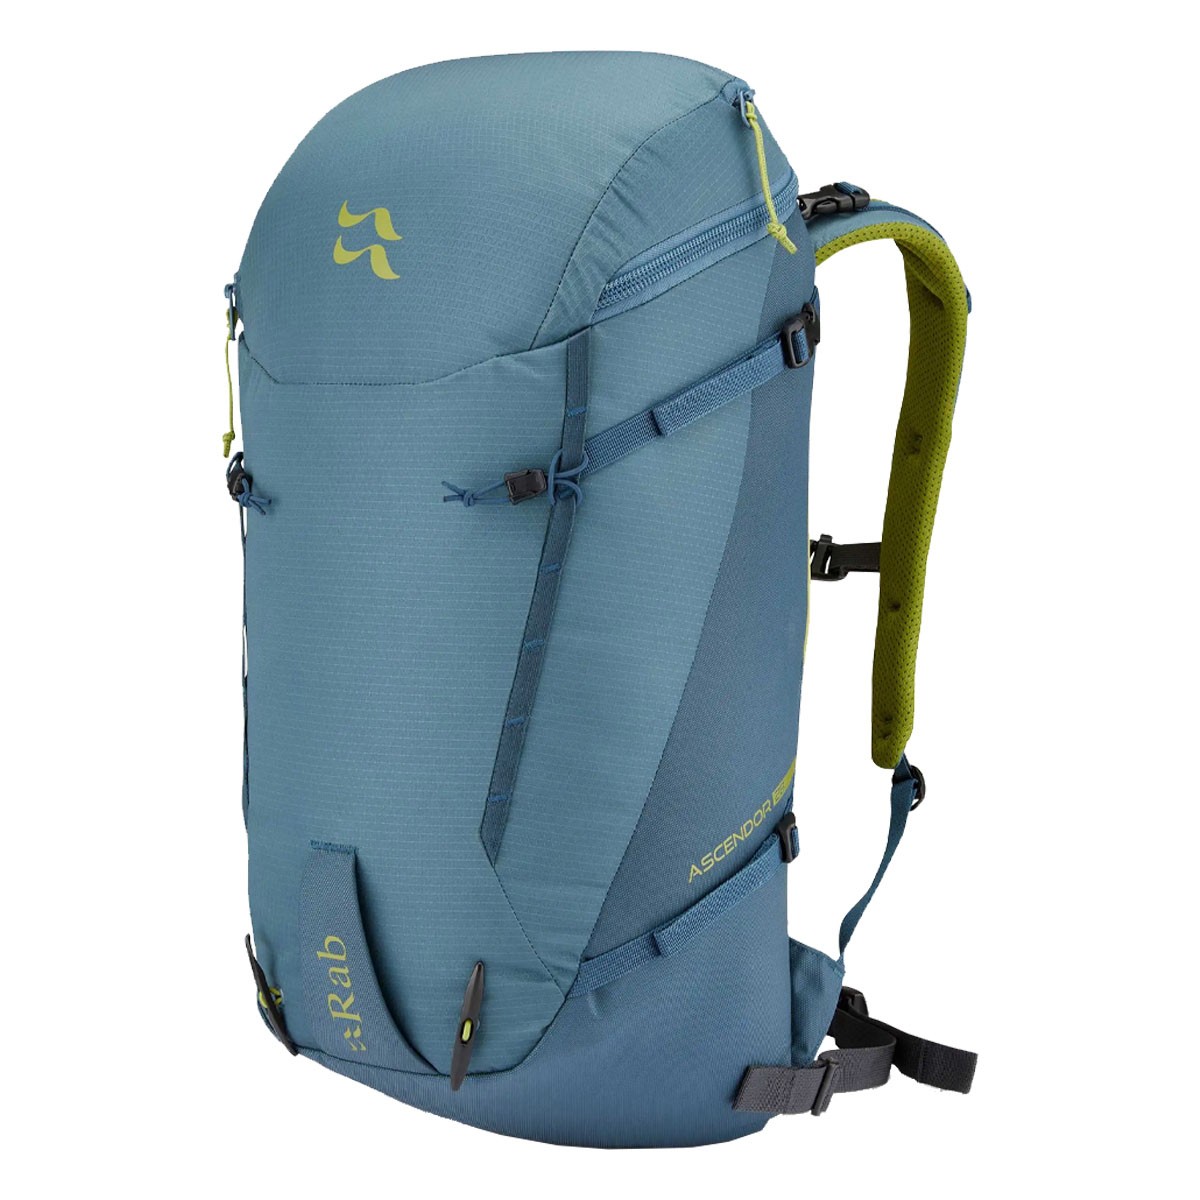 Trekking backpack Rab Ascendor 28L | EN